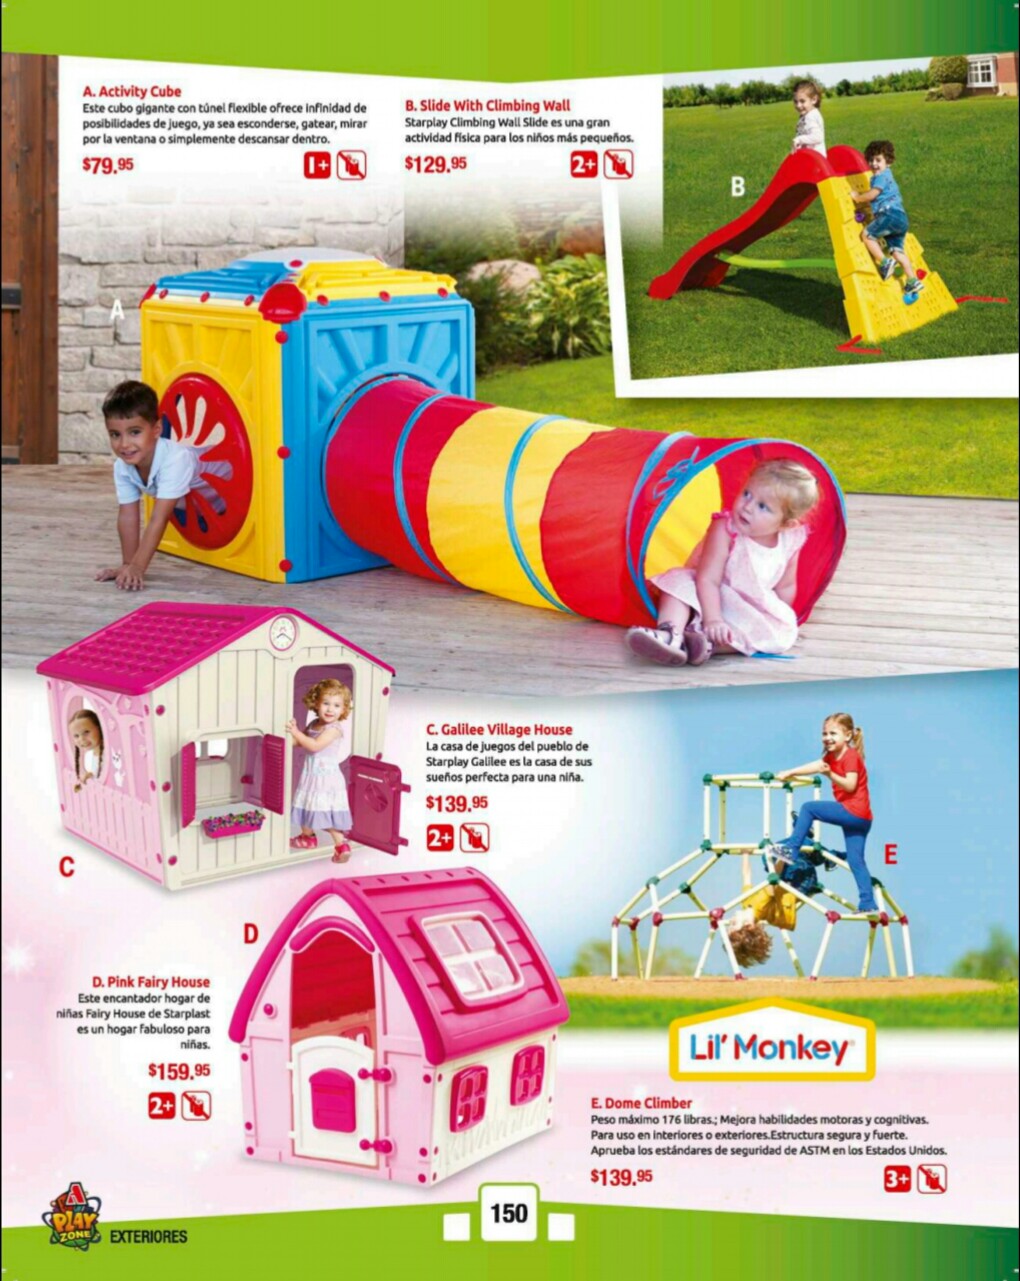 Catalogos juguetes farmacia Arrocha 2018 p150